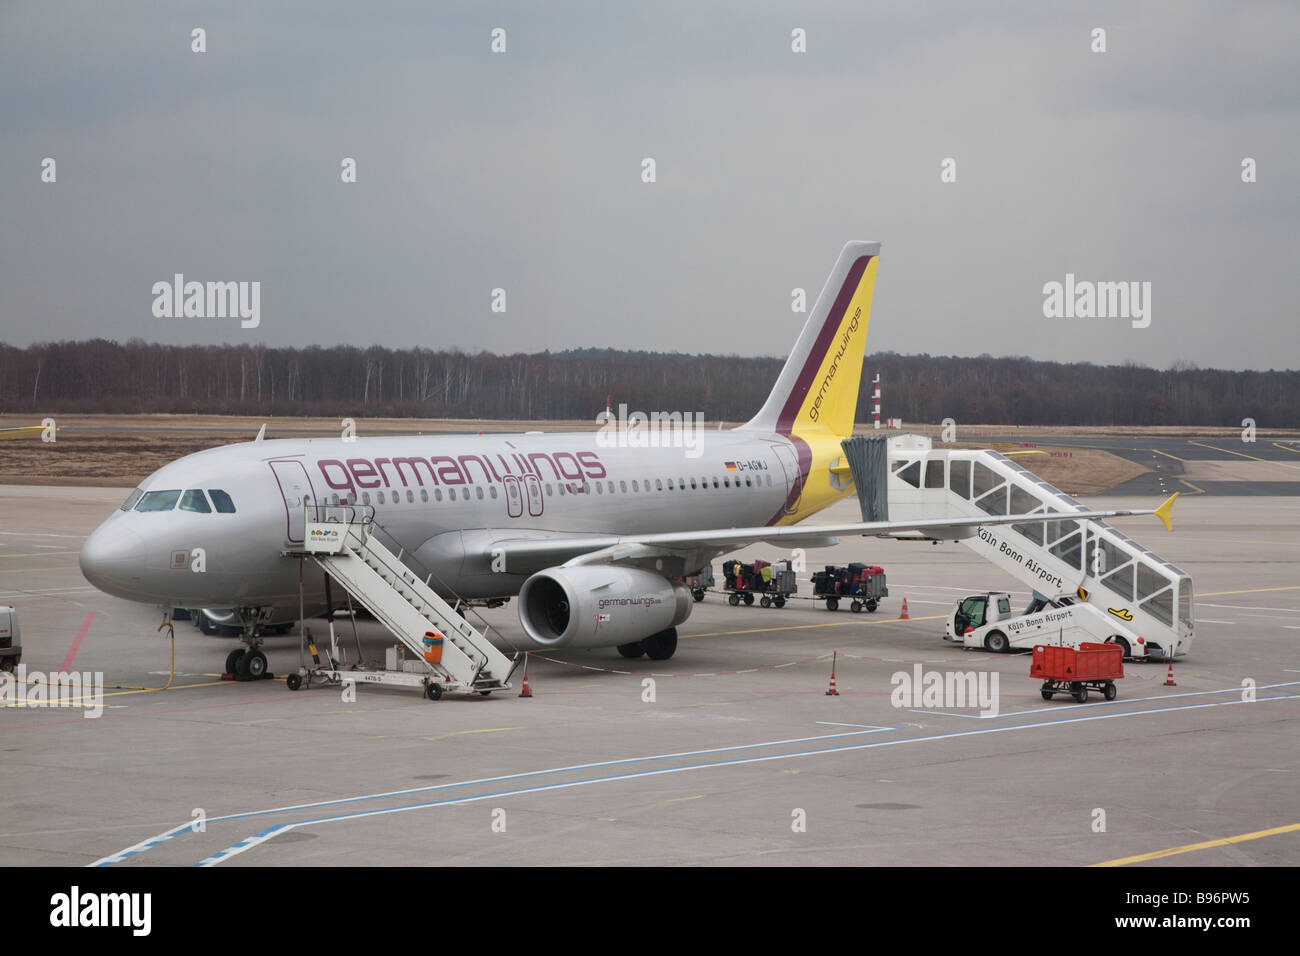 Germanwings de rodadura del avión en el aeropuerto de Colonia Bonn Foto de stock